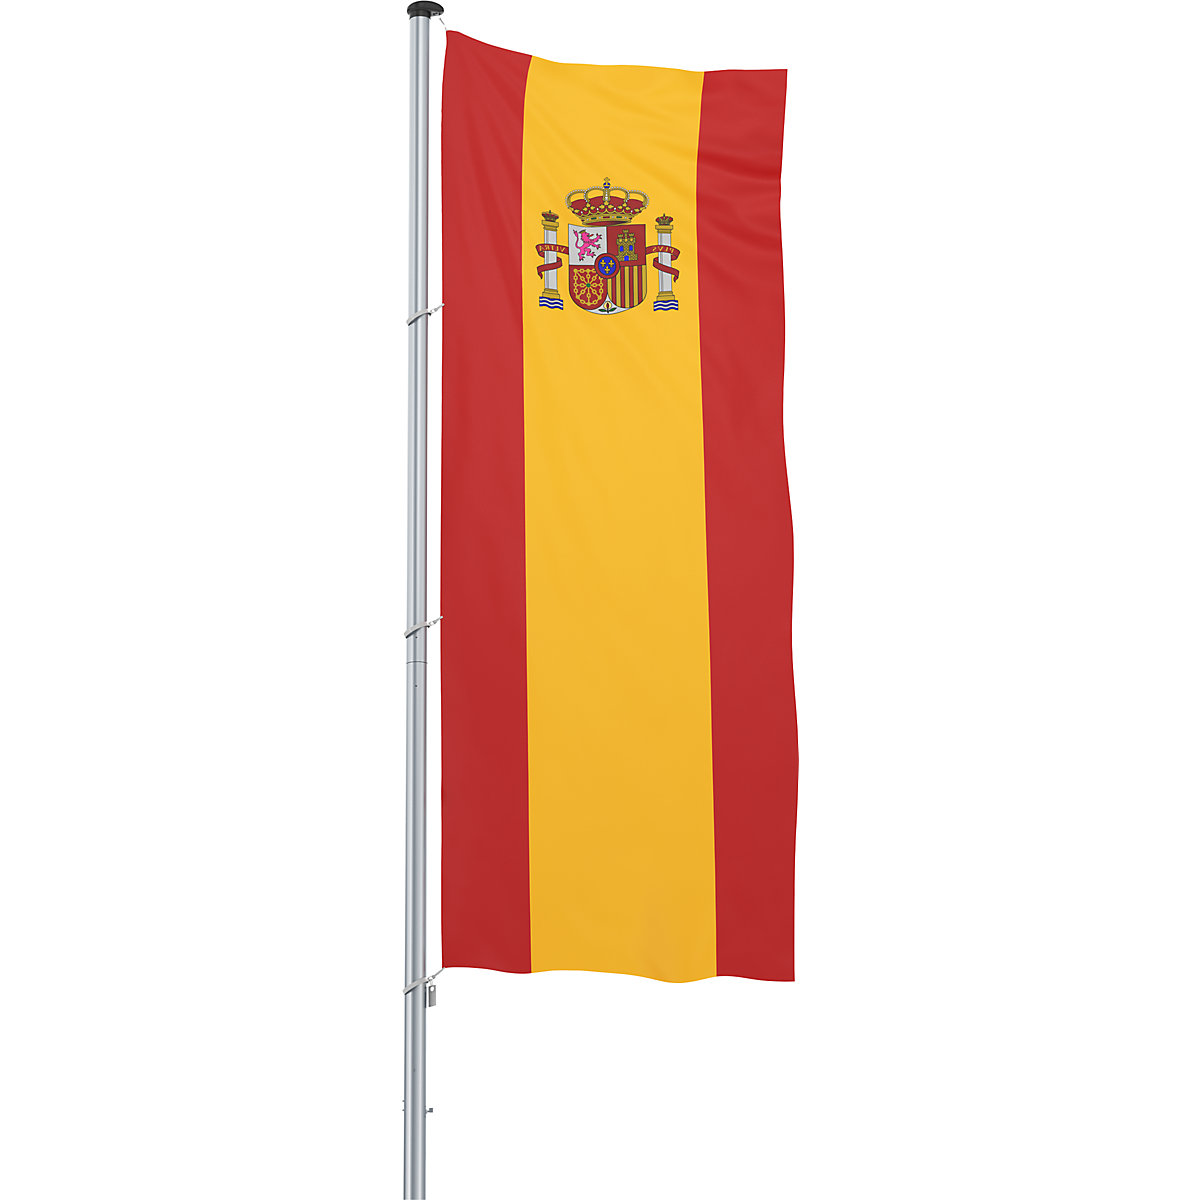 Mannus – Bandera para izar/bandera del país, formato 1,2 x 3 m, España